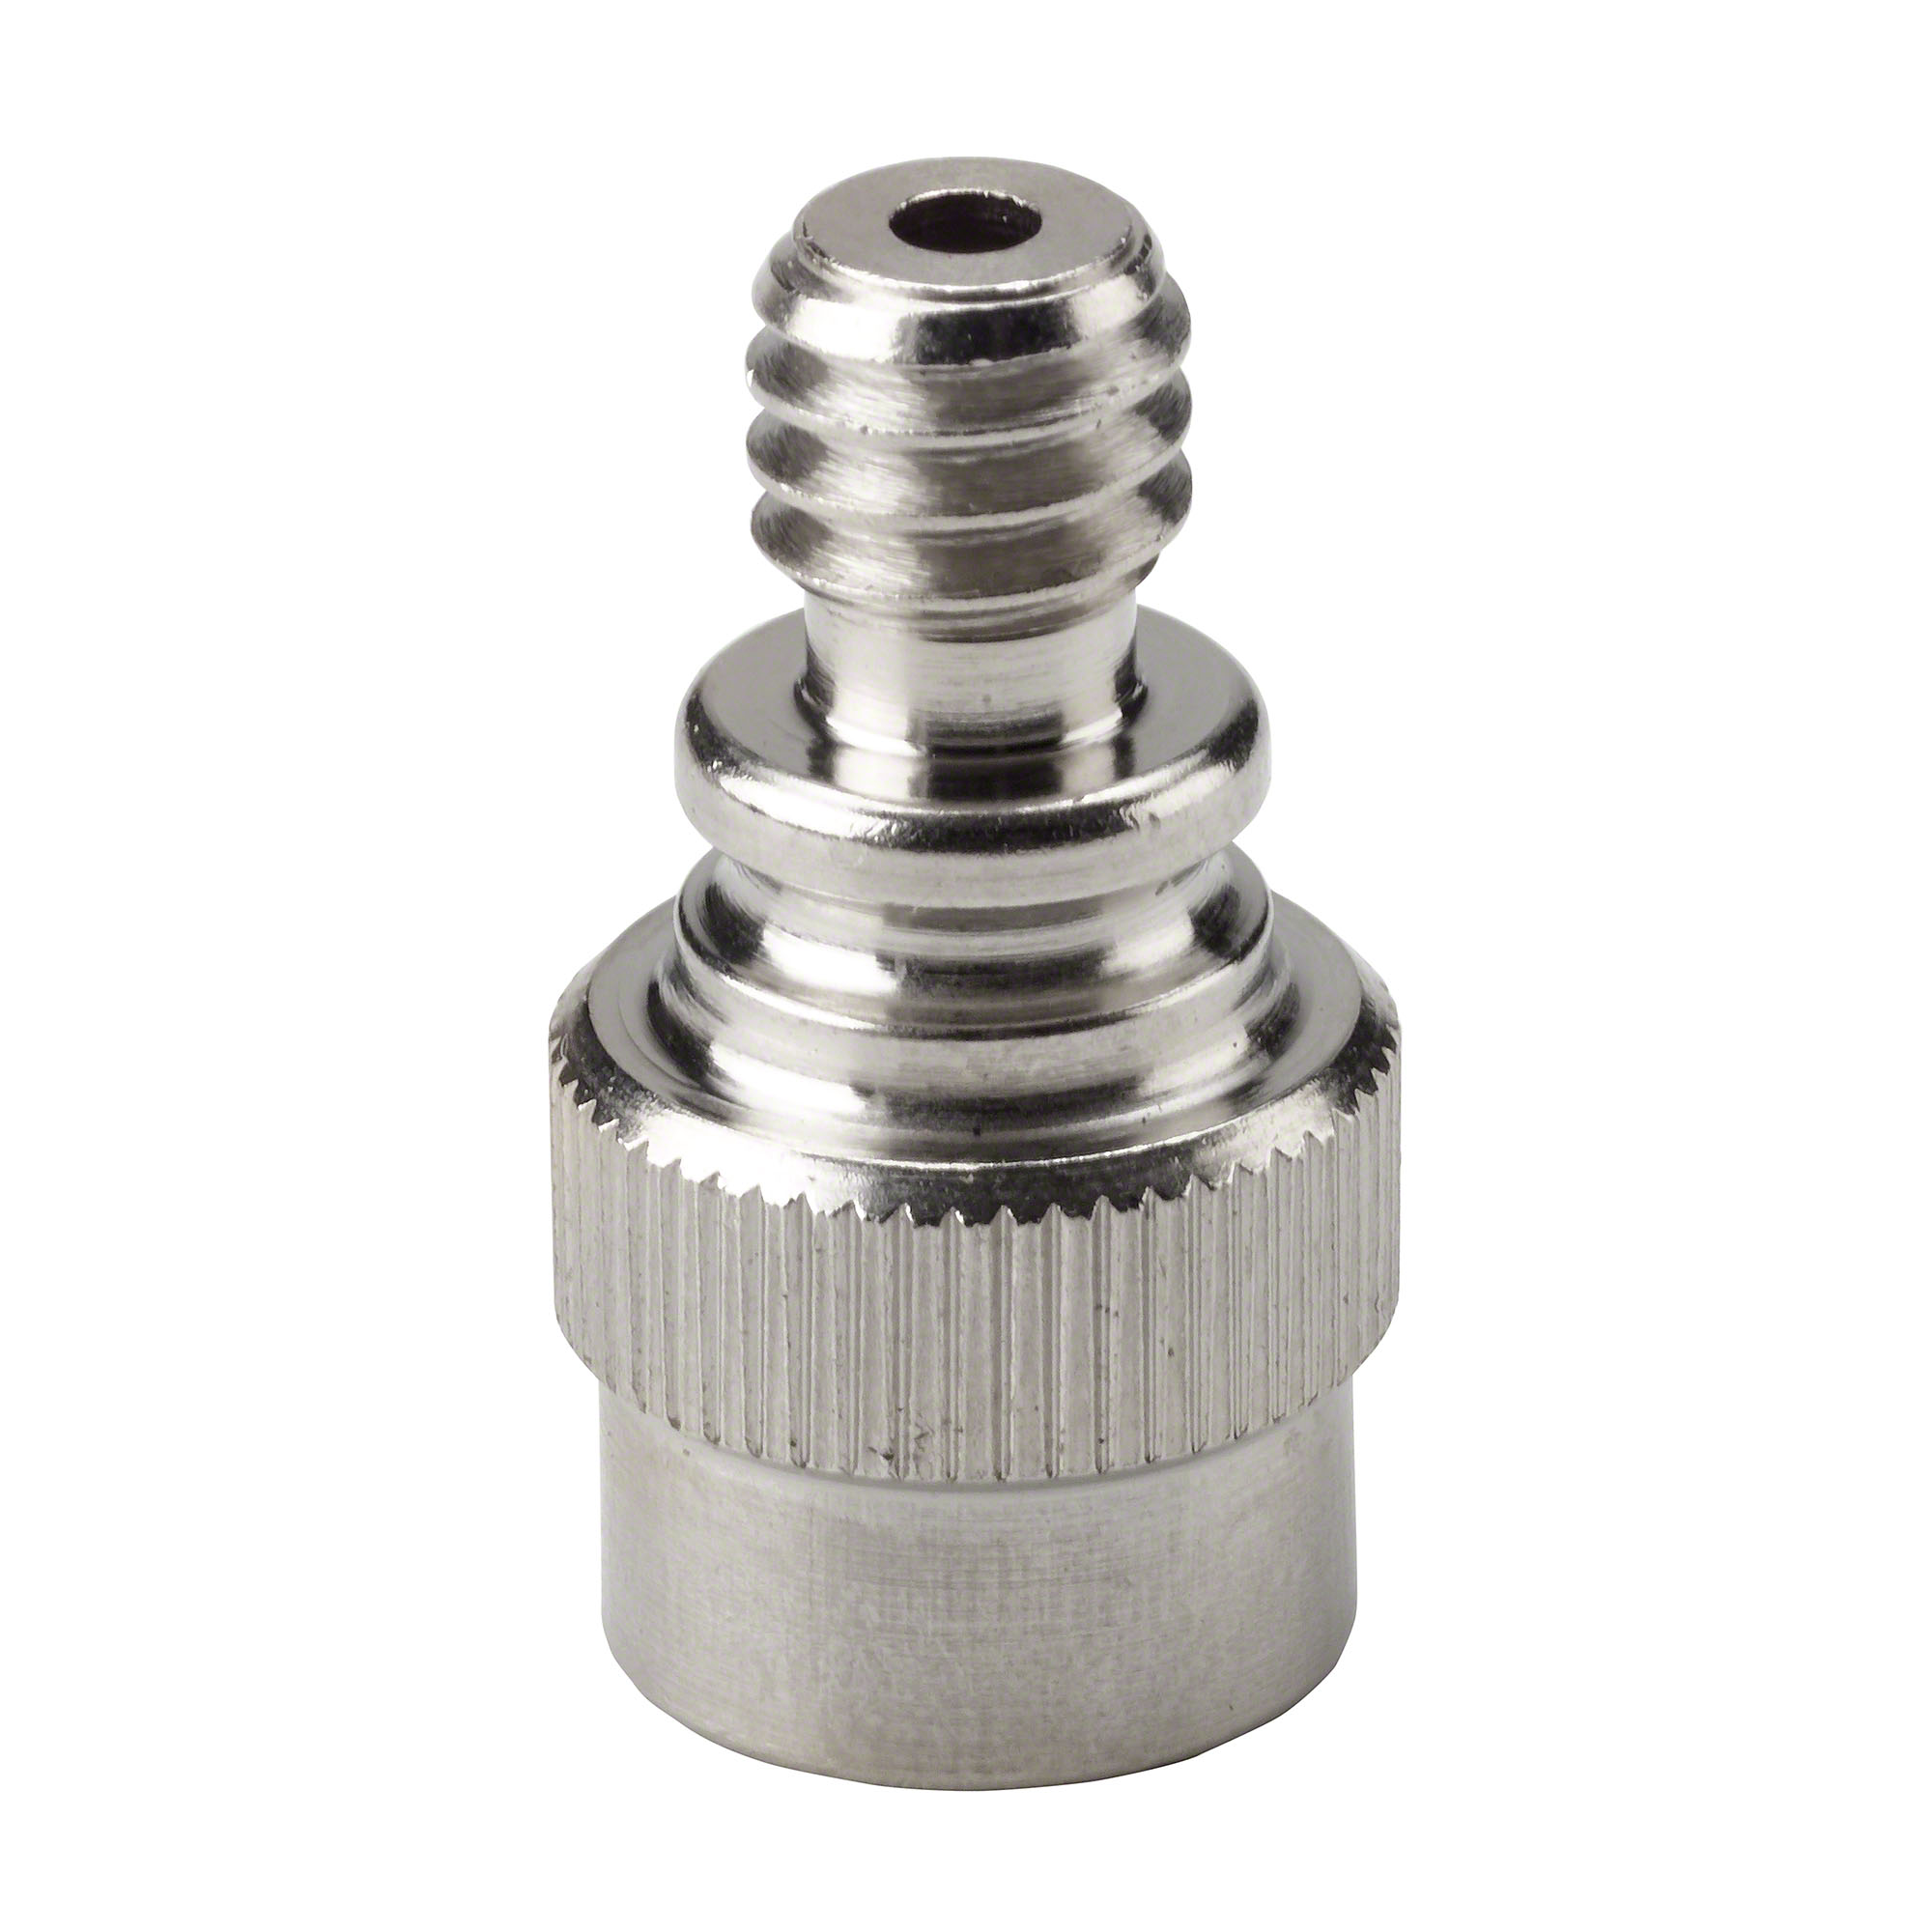 Air pump adapter - Check valve, valve pin